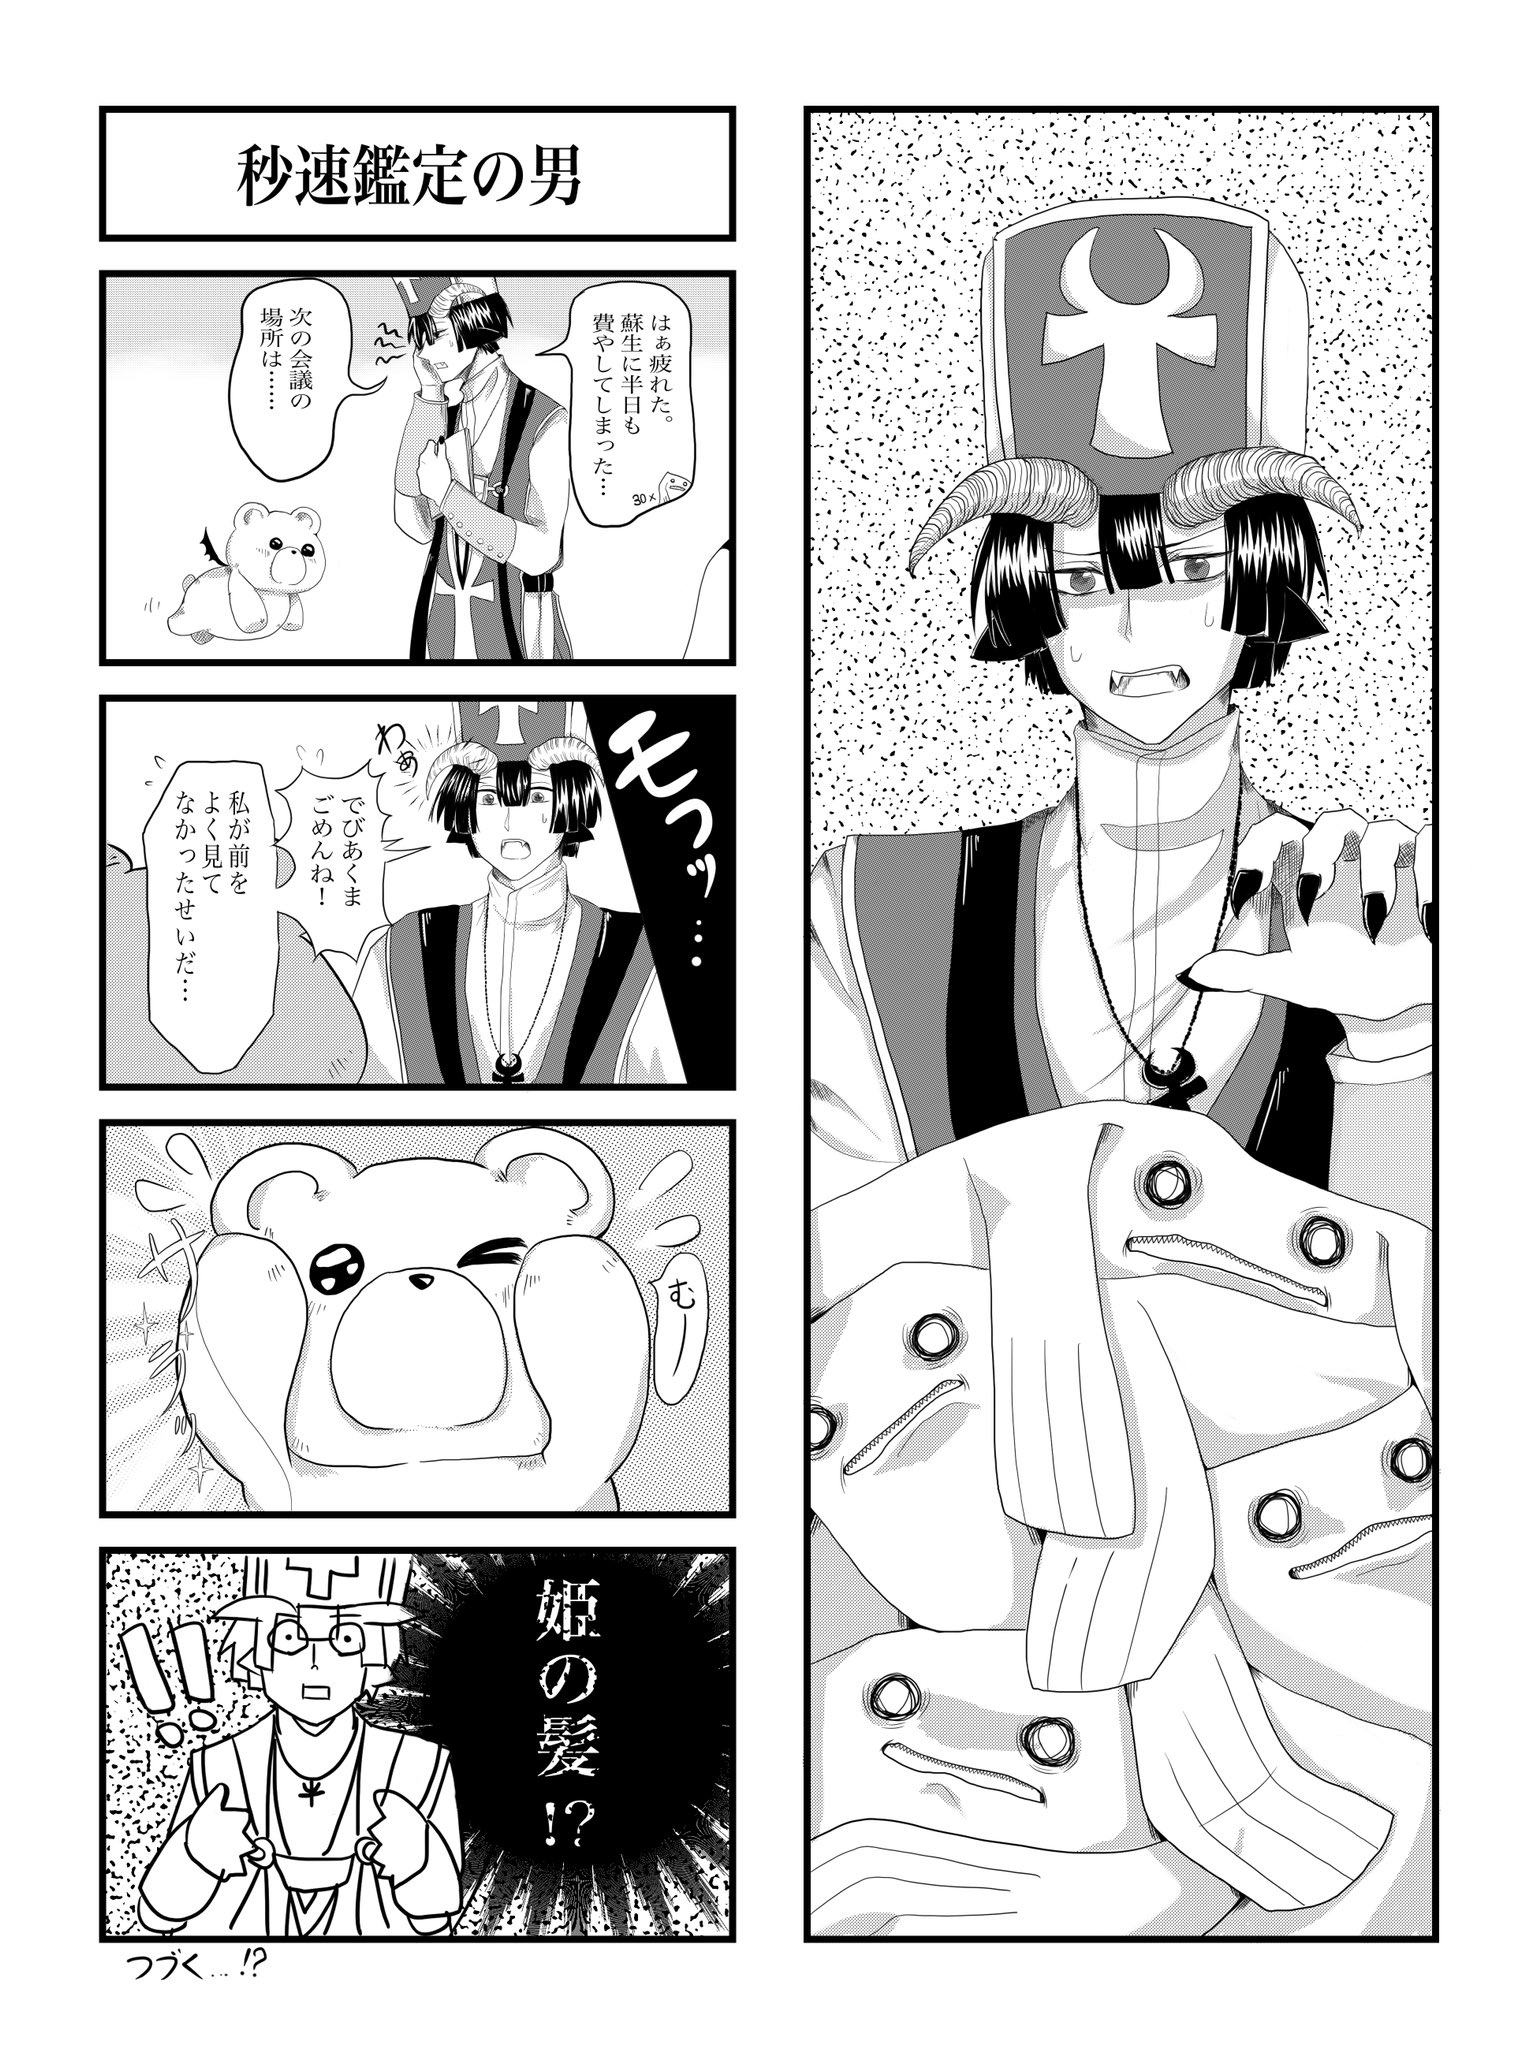 えすな クリスタの練習で4コマ漫画に挑戦してみました 3月がんばれたらつづきを描こう 魔王城でおやすみ 魔王城でおやすみイラスト T Co Zu8eeuzpx4 Twitter